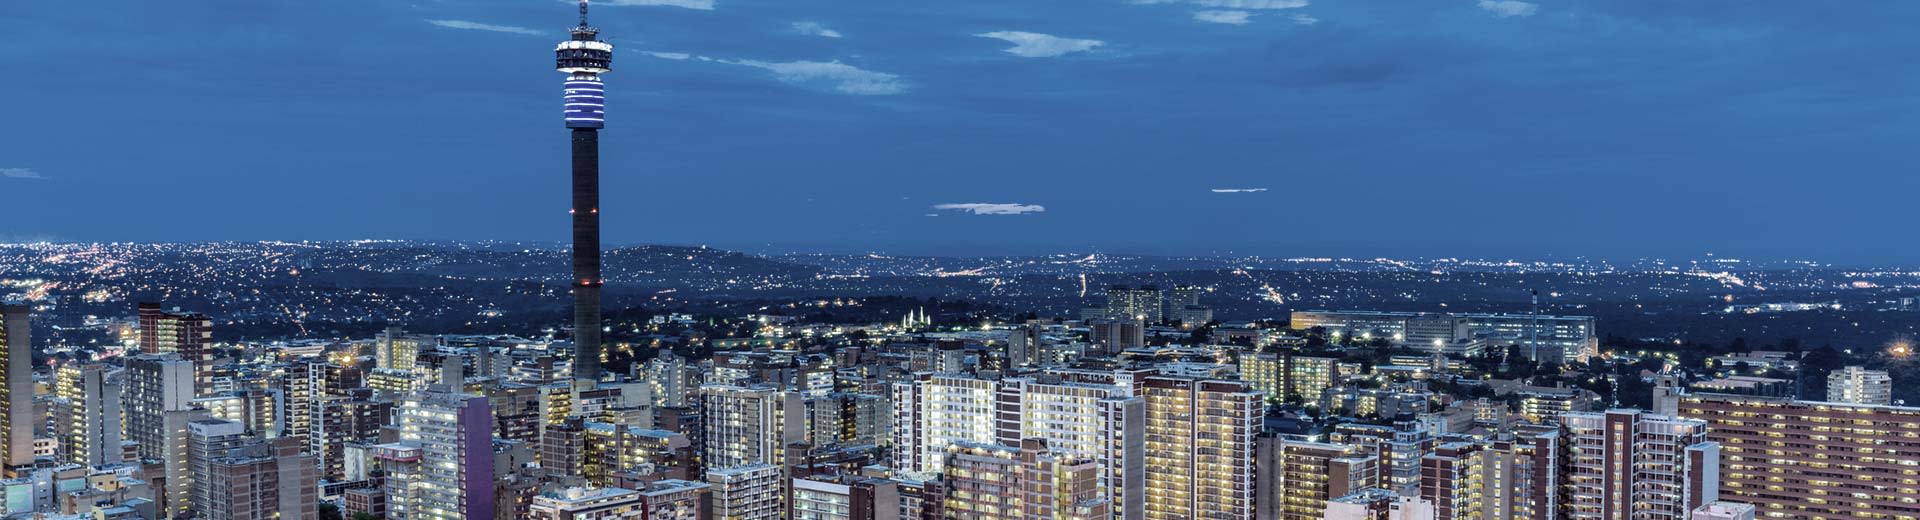 El brillante horizonte Johannesburgo en una noche oscura, con edificios de oficinas de gran altura y unidades residenciales.